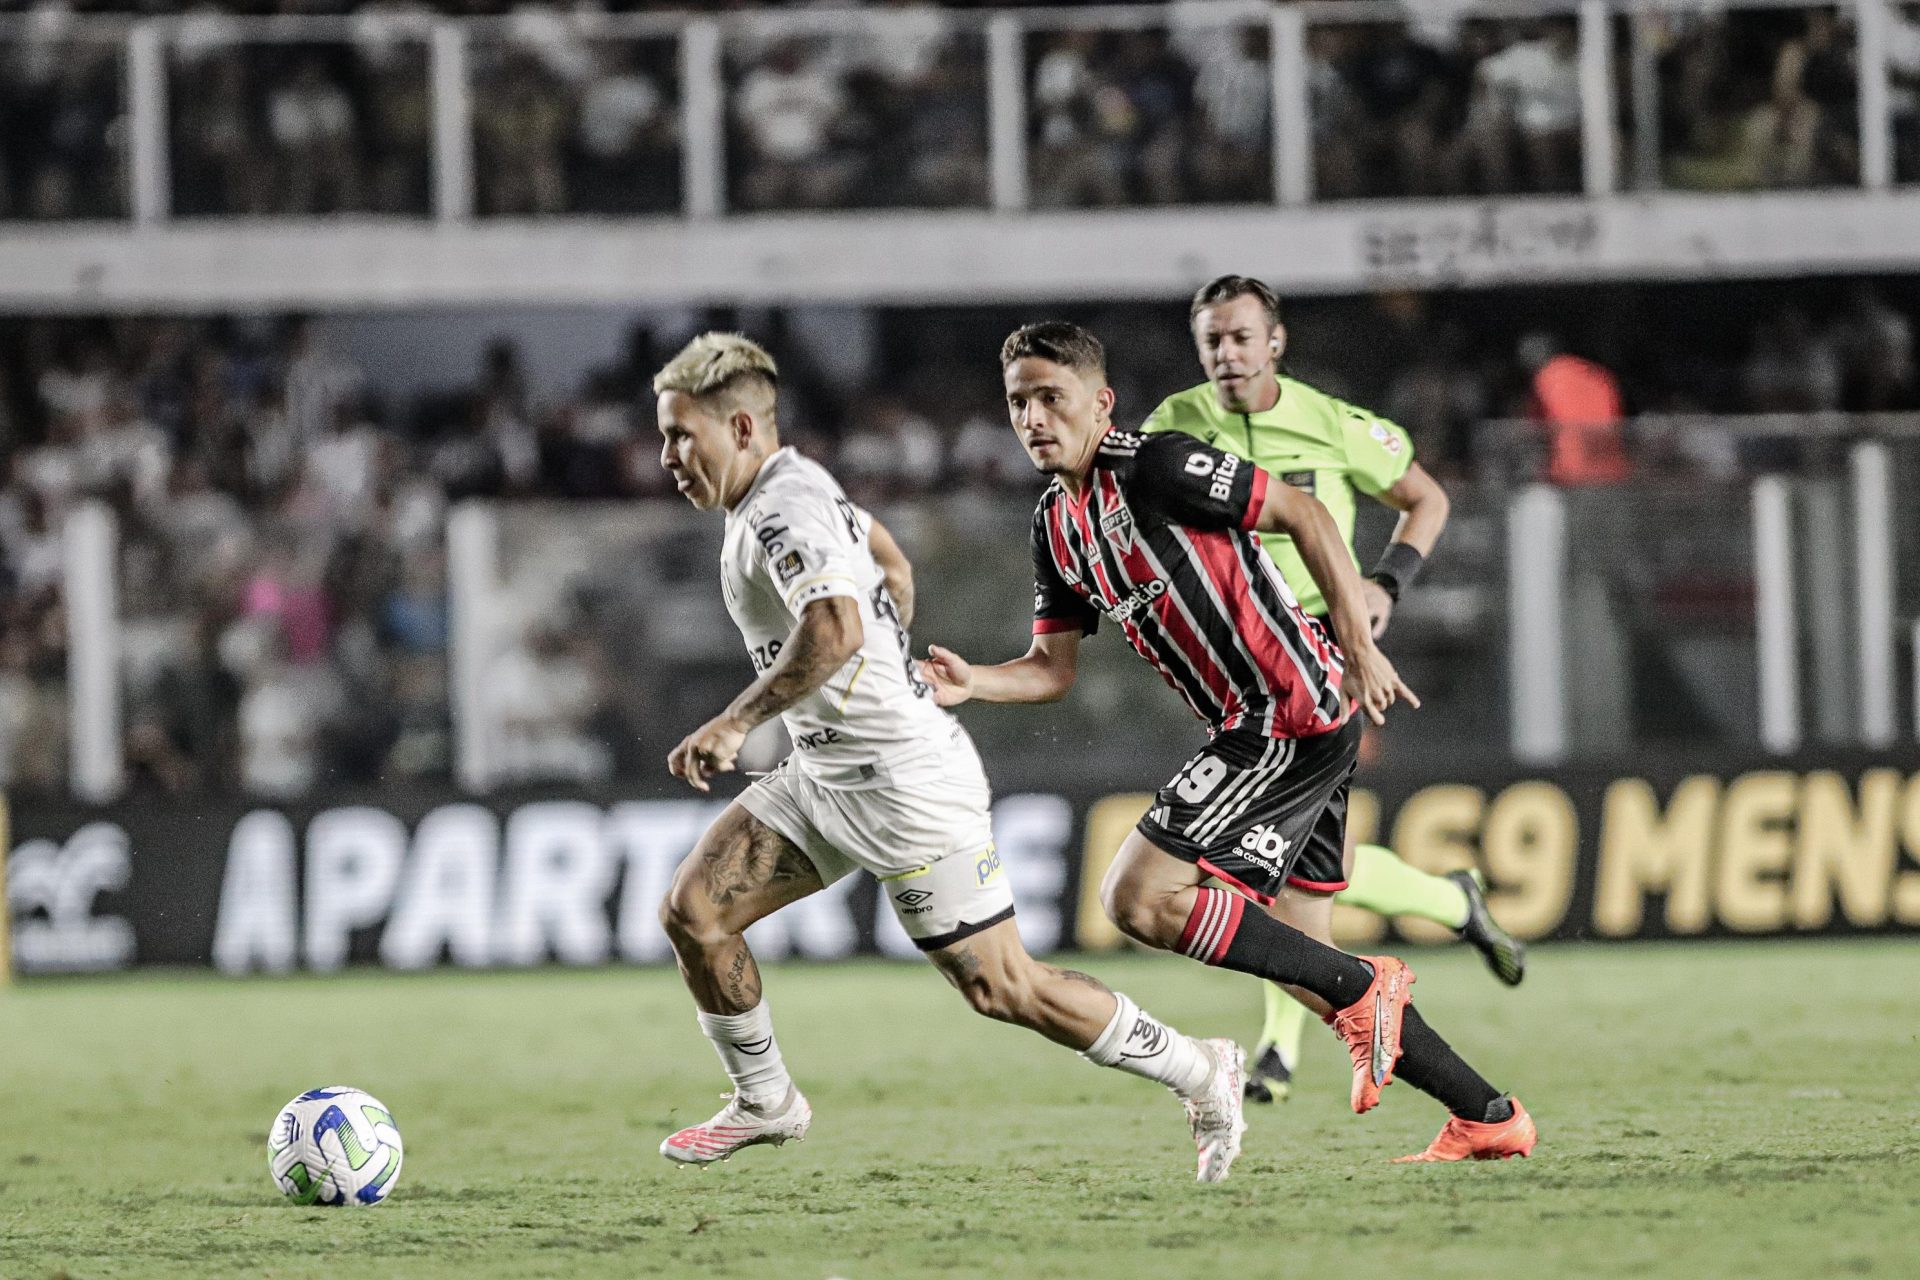 Santos e São Paulo empatam em 0 a 0, na partida válida pela 34ª rodada do Brasileirão - Foto: Reinaldo Campos/Futura Press/Futura Press/Estadão Conteúdo